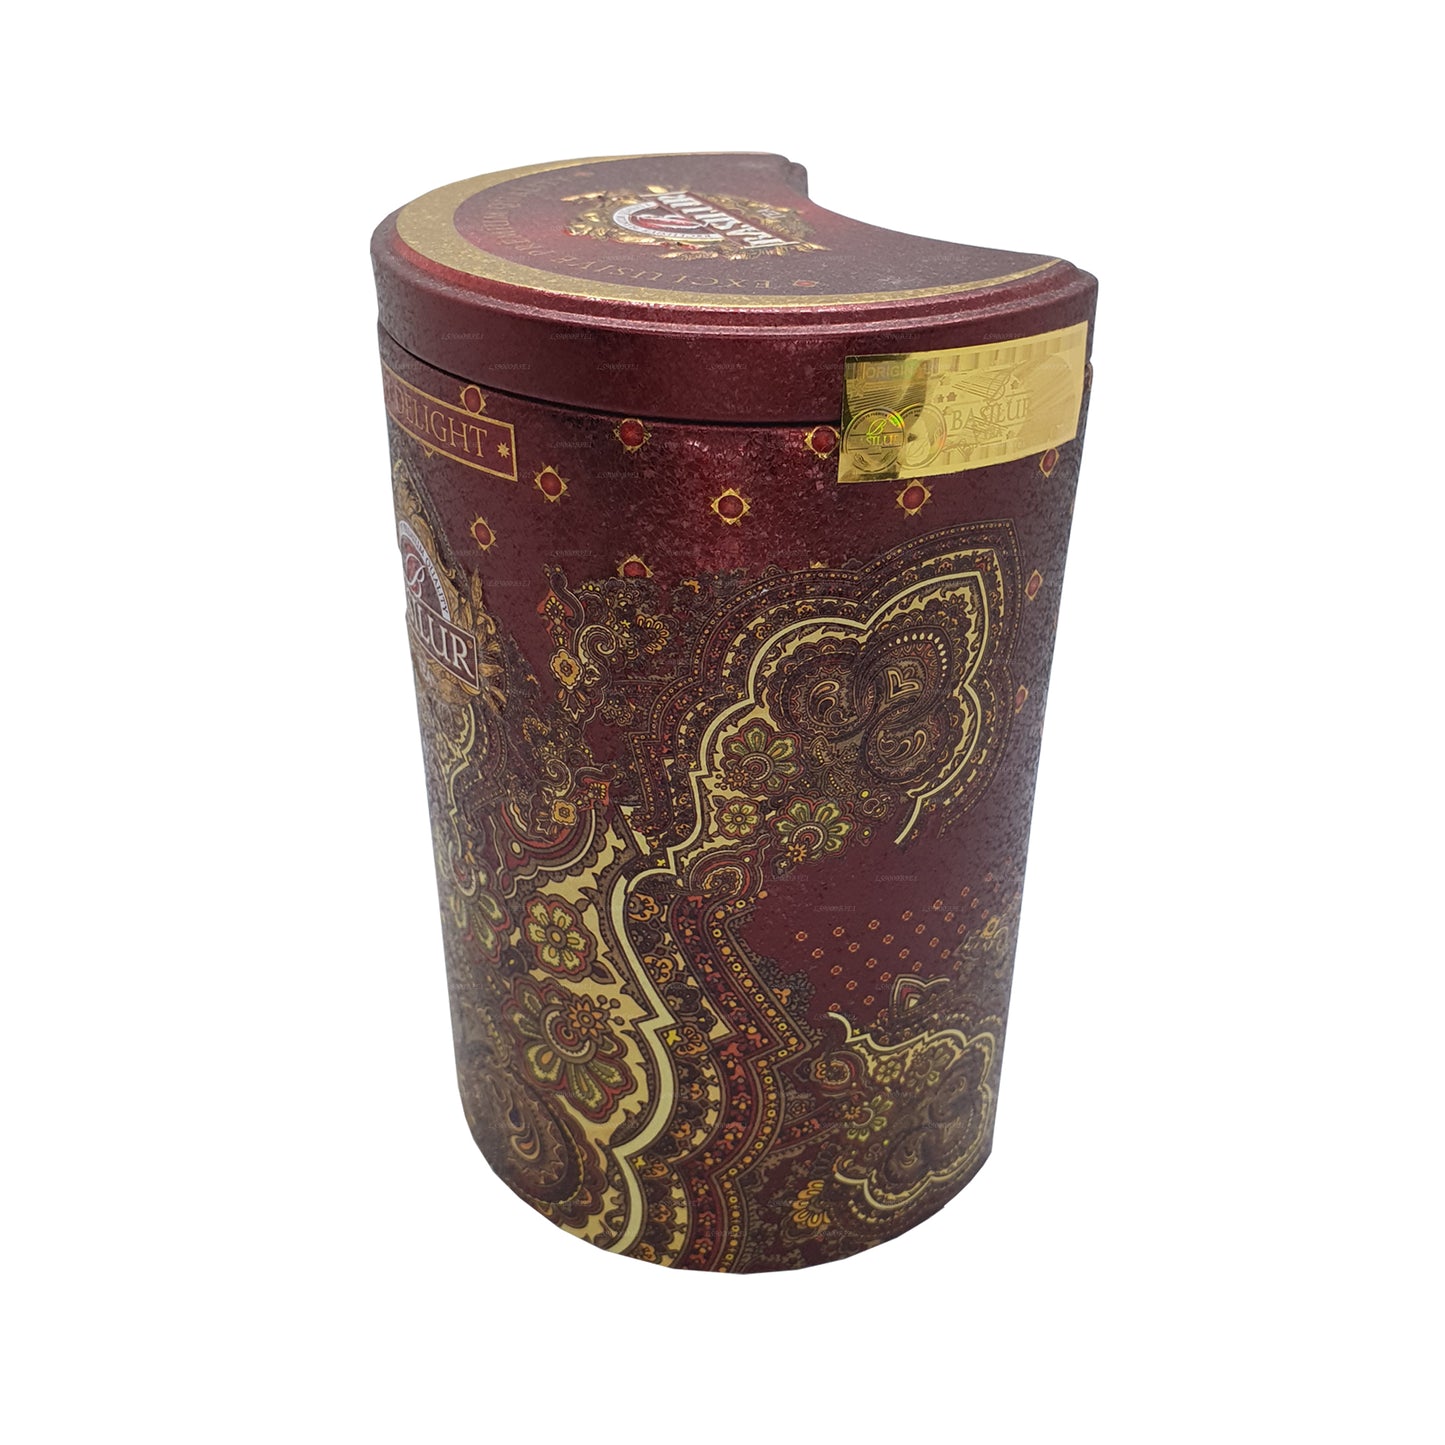 Basilur Oriental „Orient Delight“ (100g) Caddy